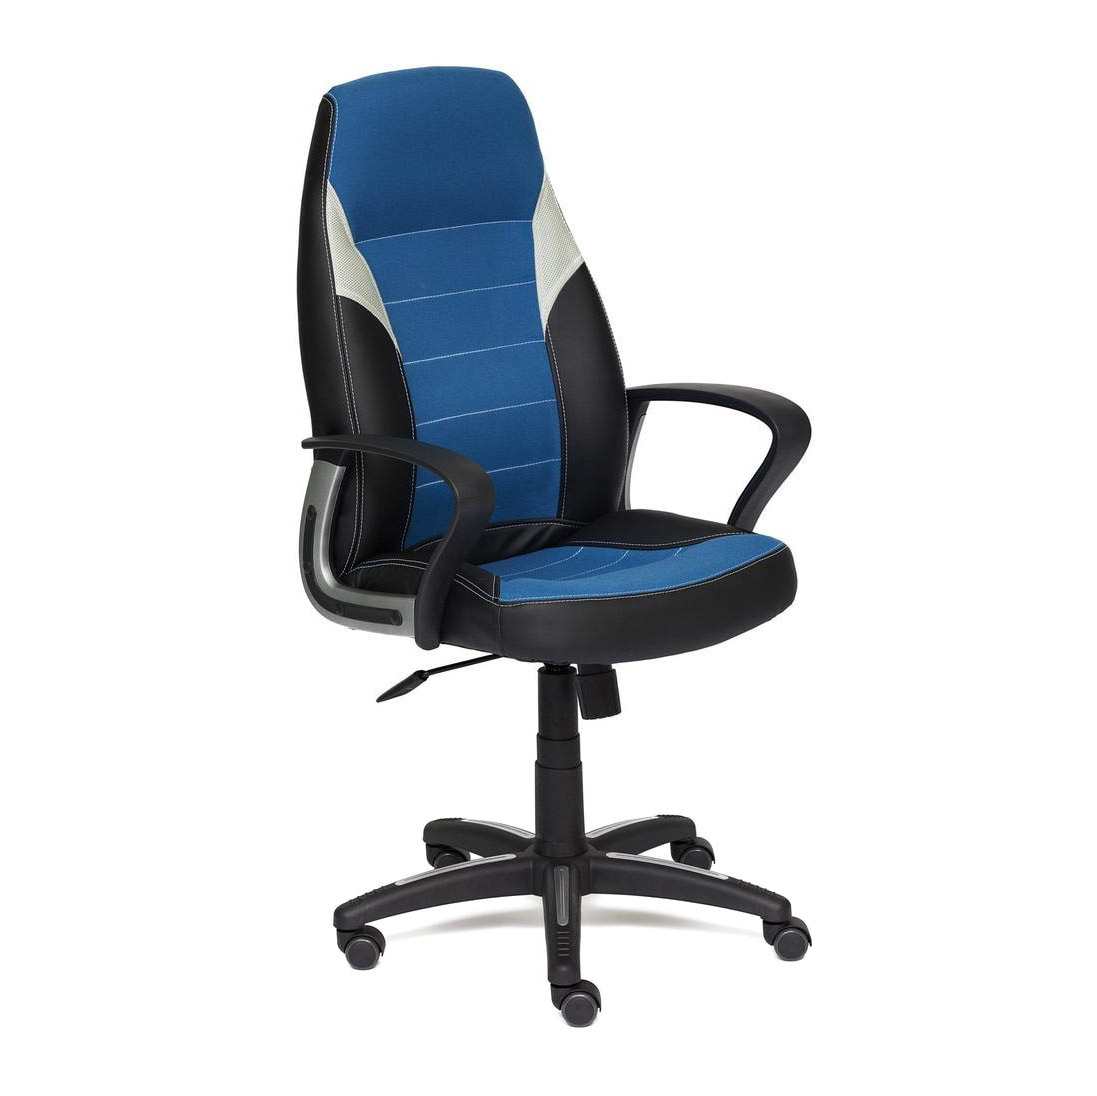 Кресло компьютерное TC синий 131х65х48 см эргономичное колесико офисное кресло с поддержкой спинки удобное вращающееся игровое кресло подставка для ног офисная мебель